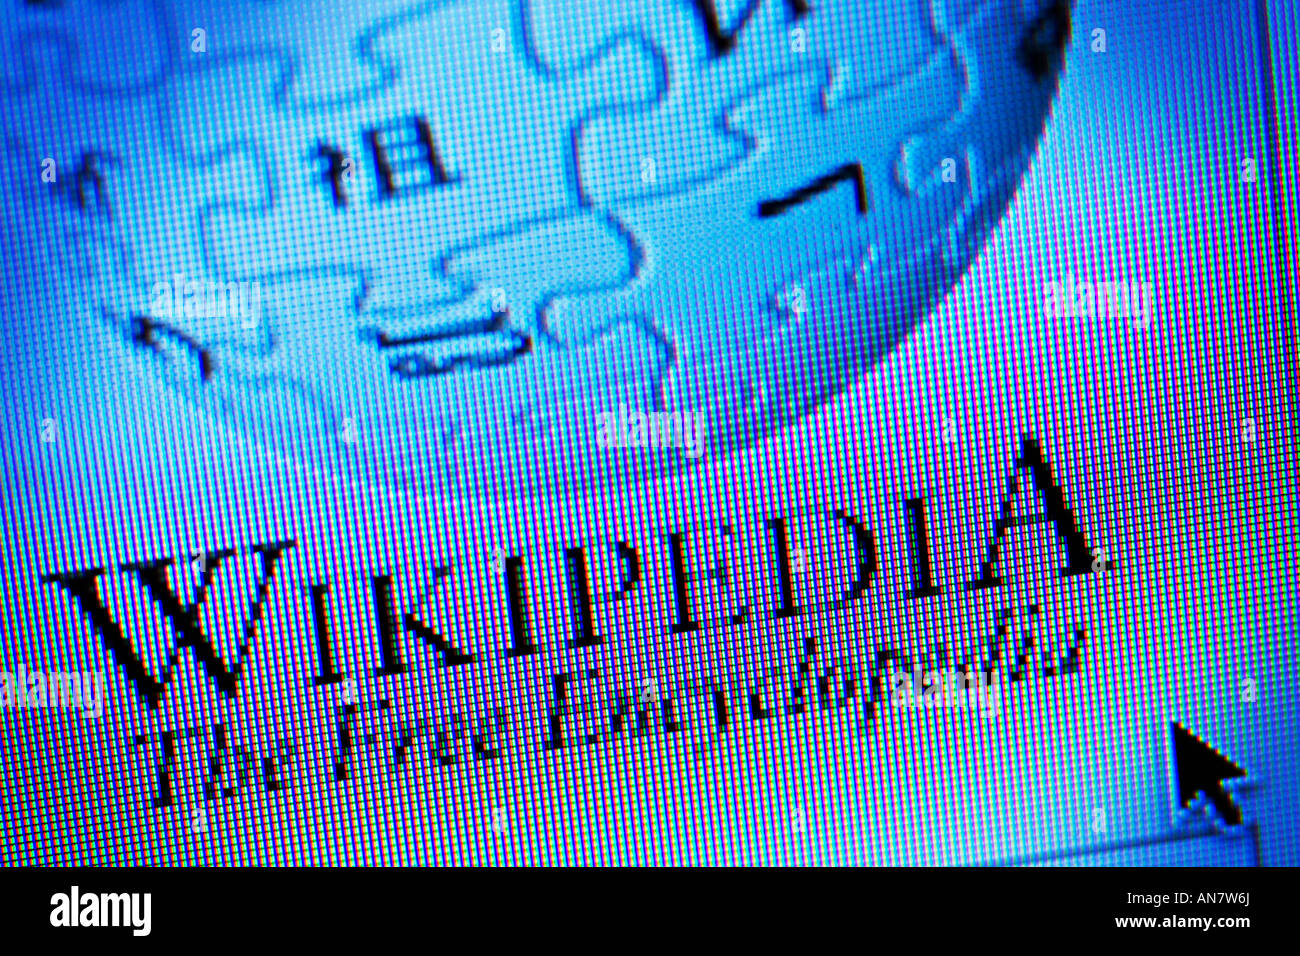 Site web de l'encyclopédie Wikipedia www.wikipedia.org Banque D'Images